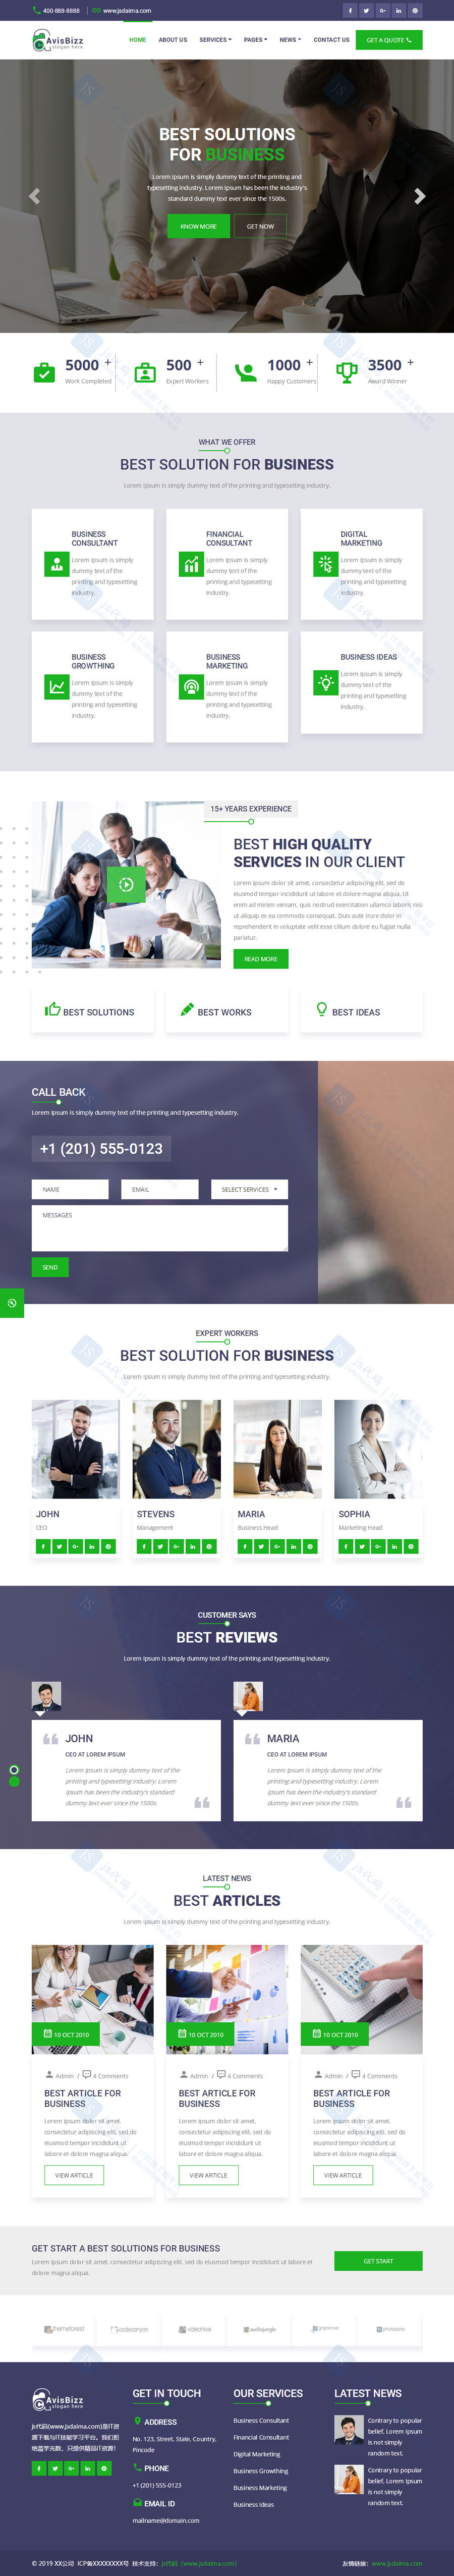 绿色宽屏简洁大气通用型商务公司企业HTML5自适应网站模板